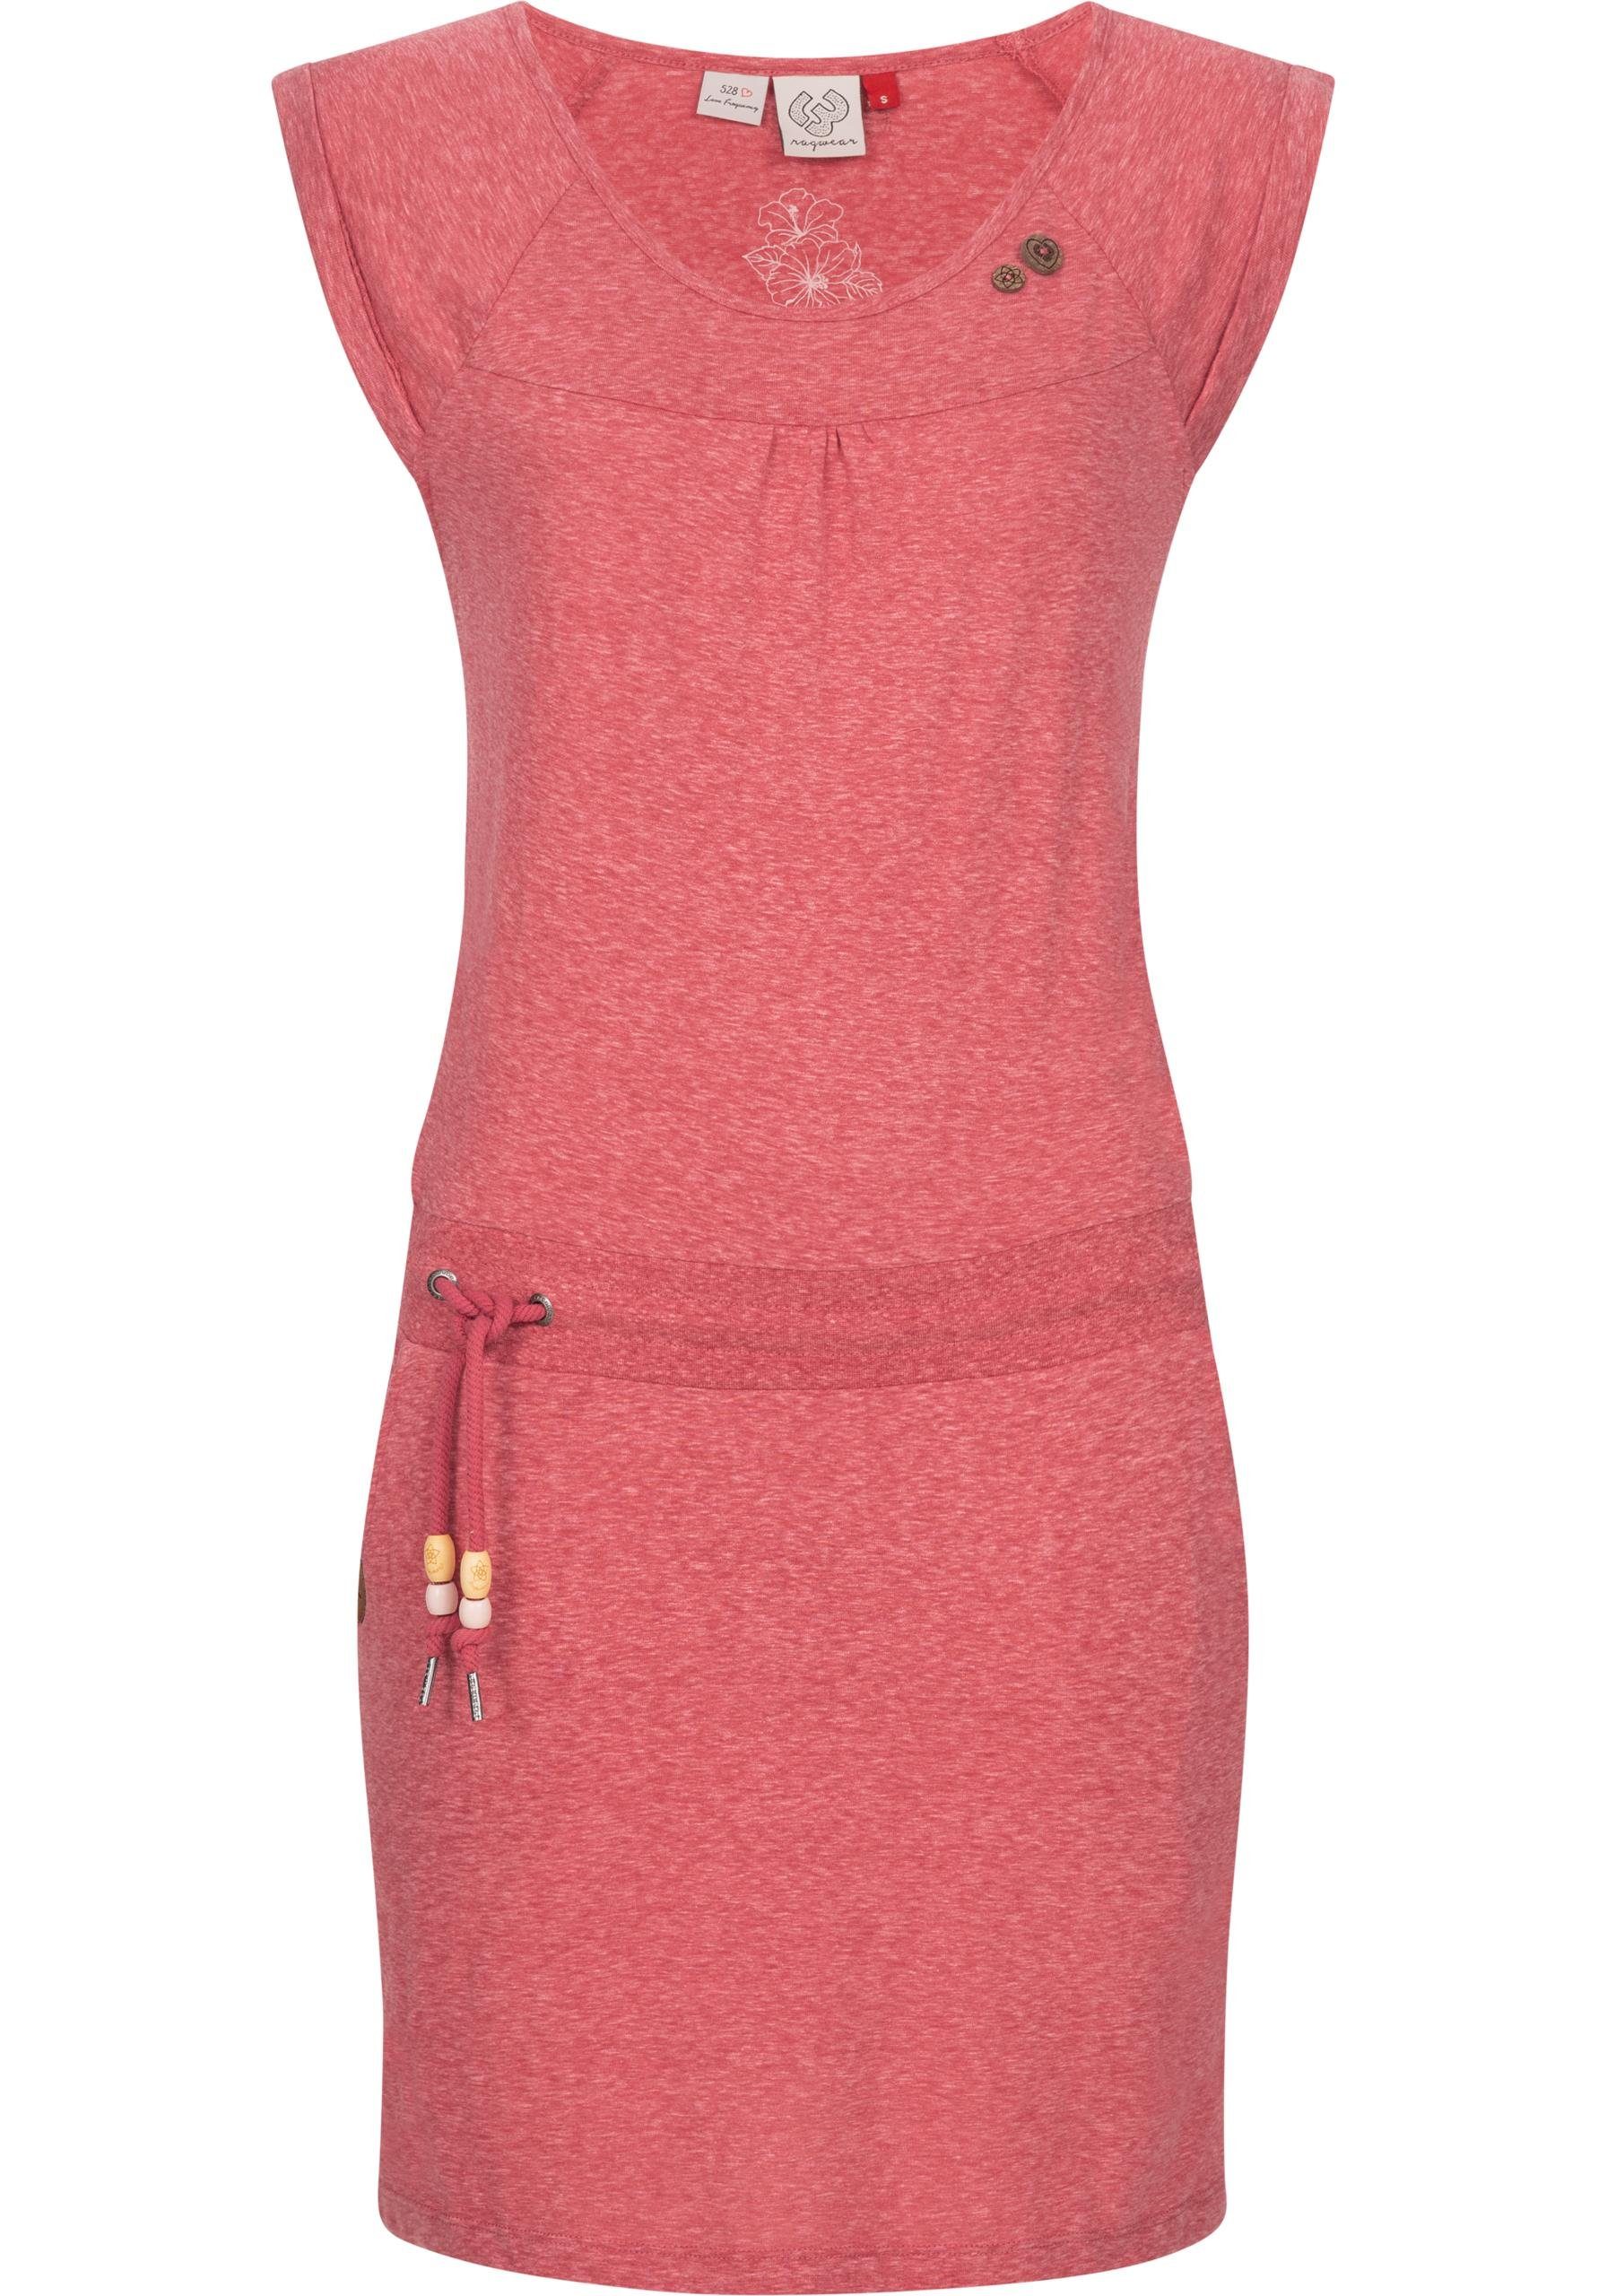 Hochwertiges Material Ragwear Sommerkleid Penelope leichtes Kleid Print dunkelrot Baumwoll mit